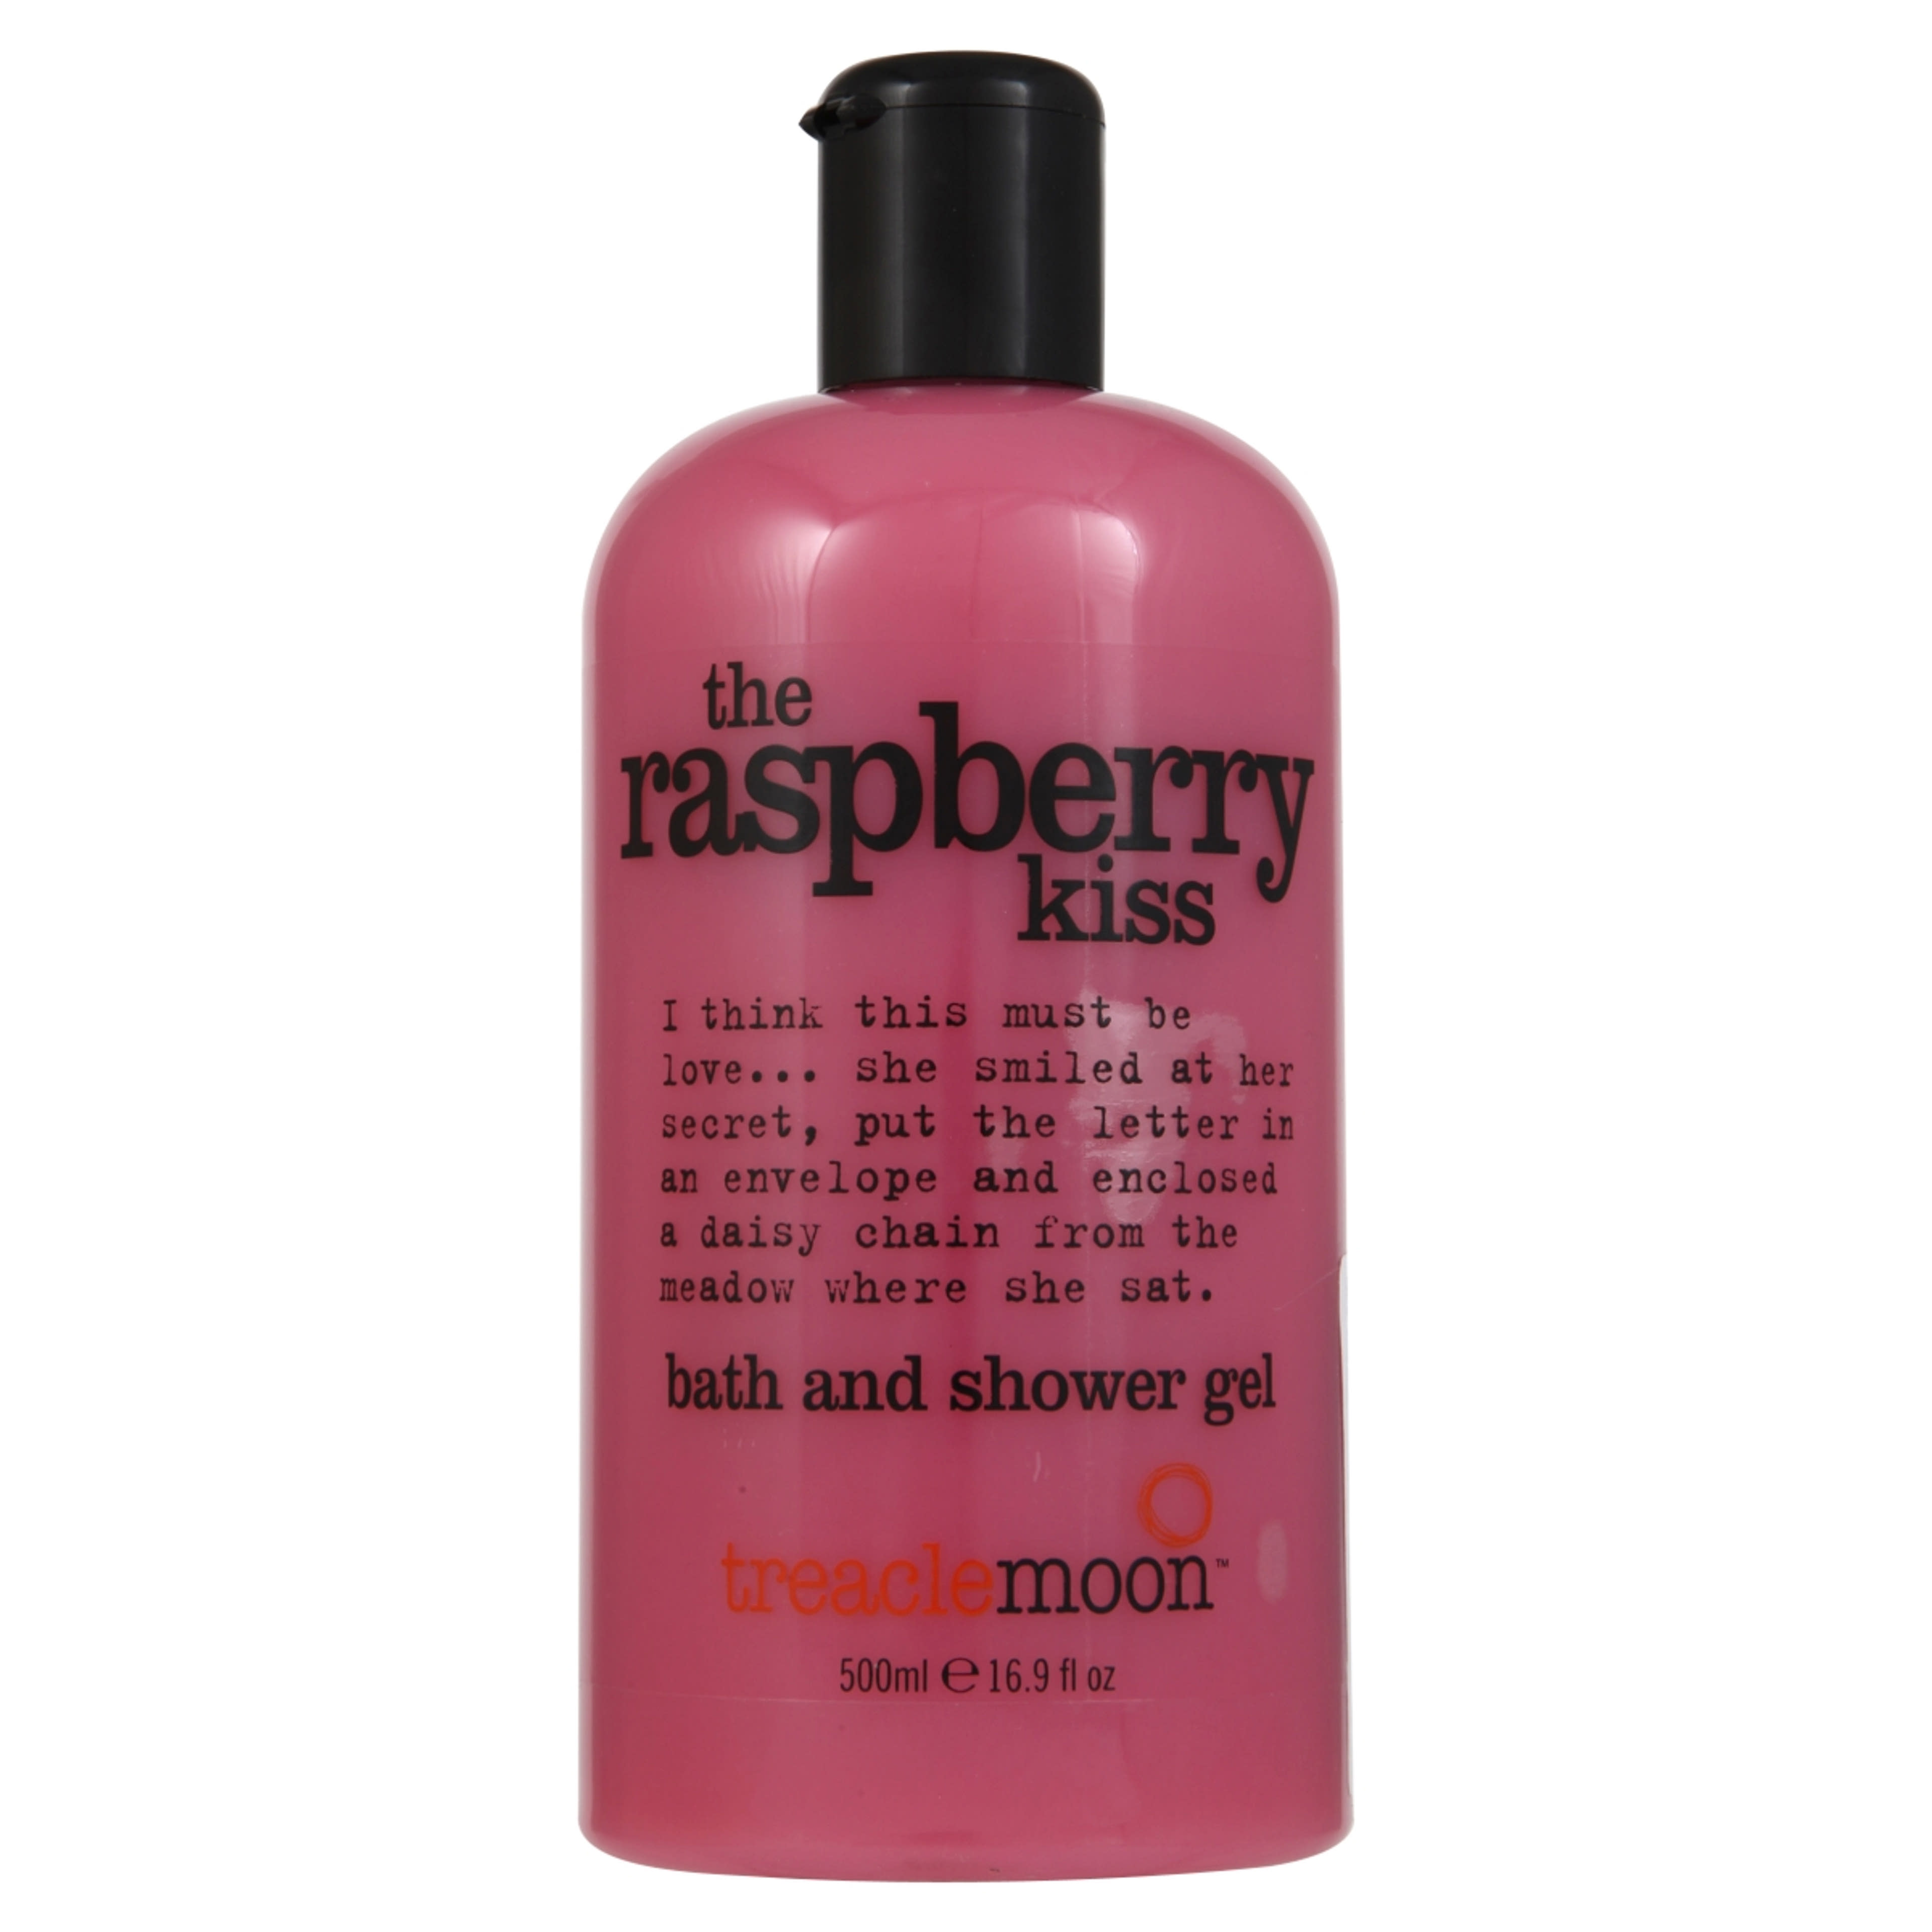 Treaclemoon tusfürdő Raspberry kiss málnás - 500 ml-1